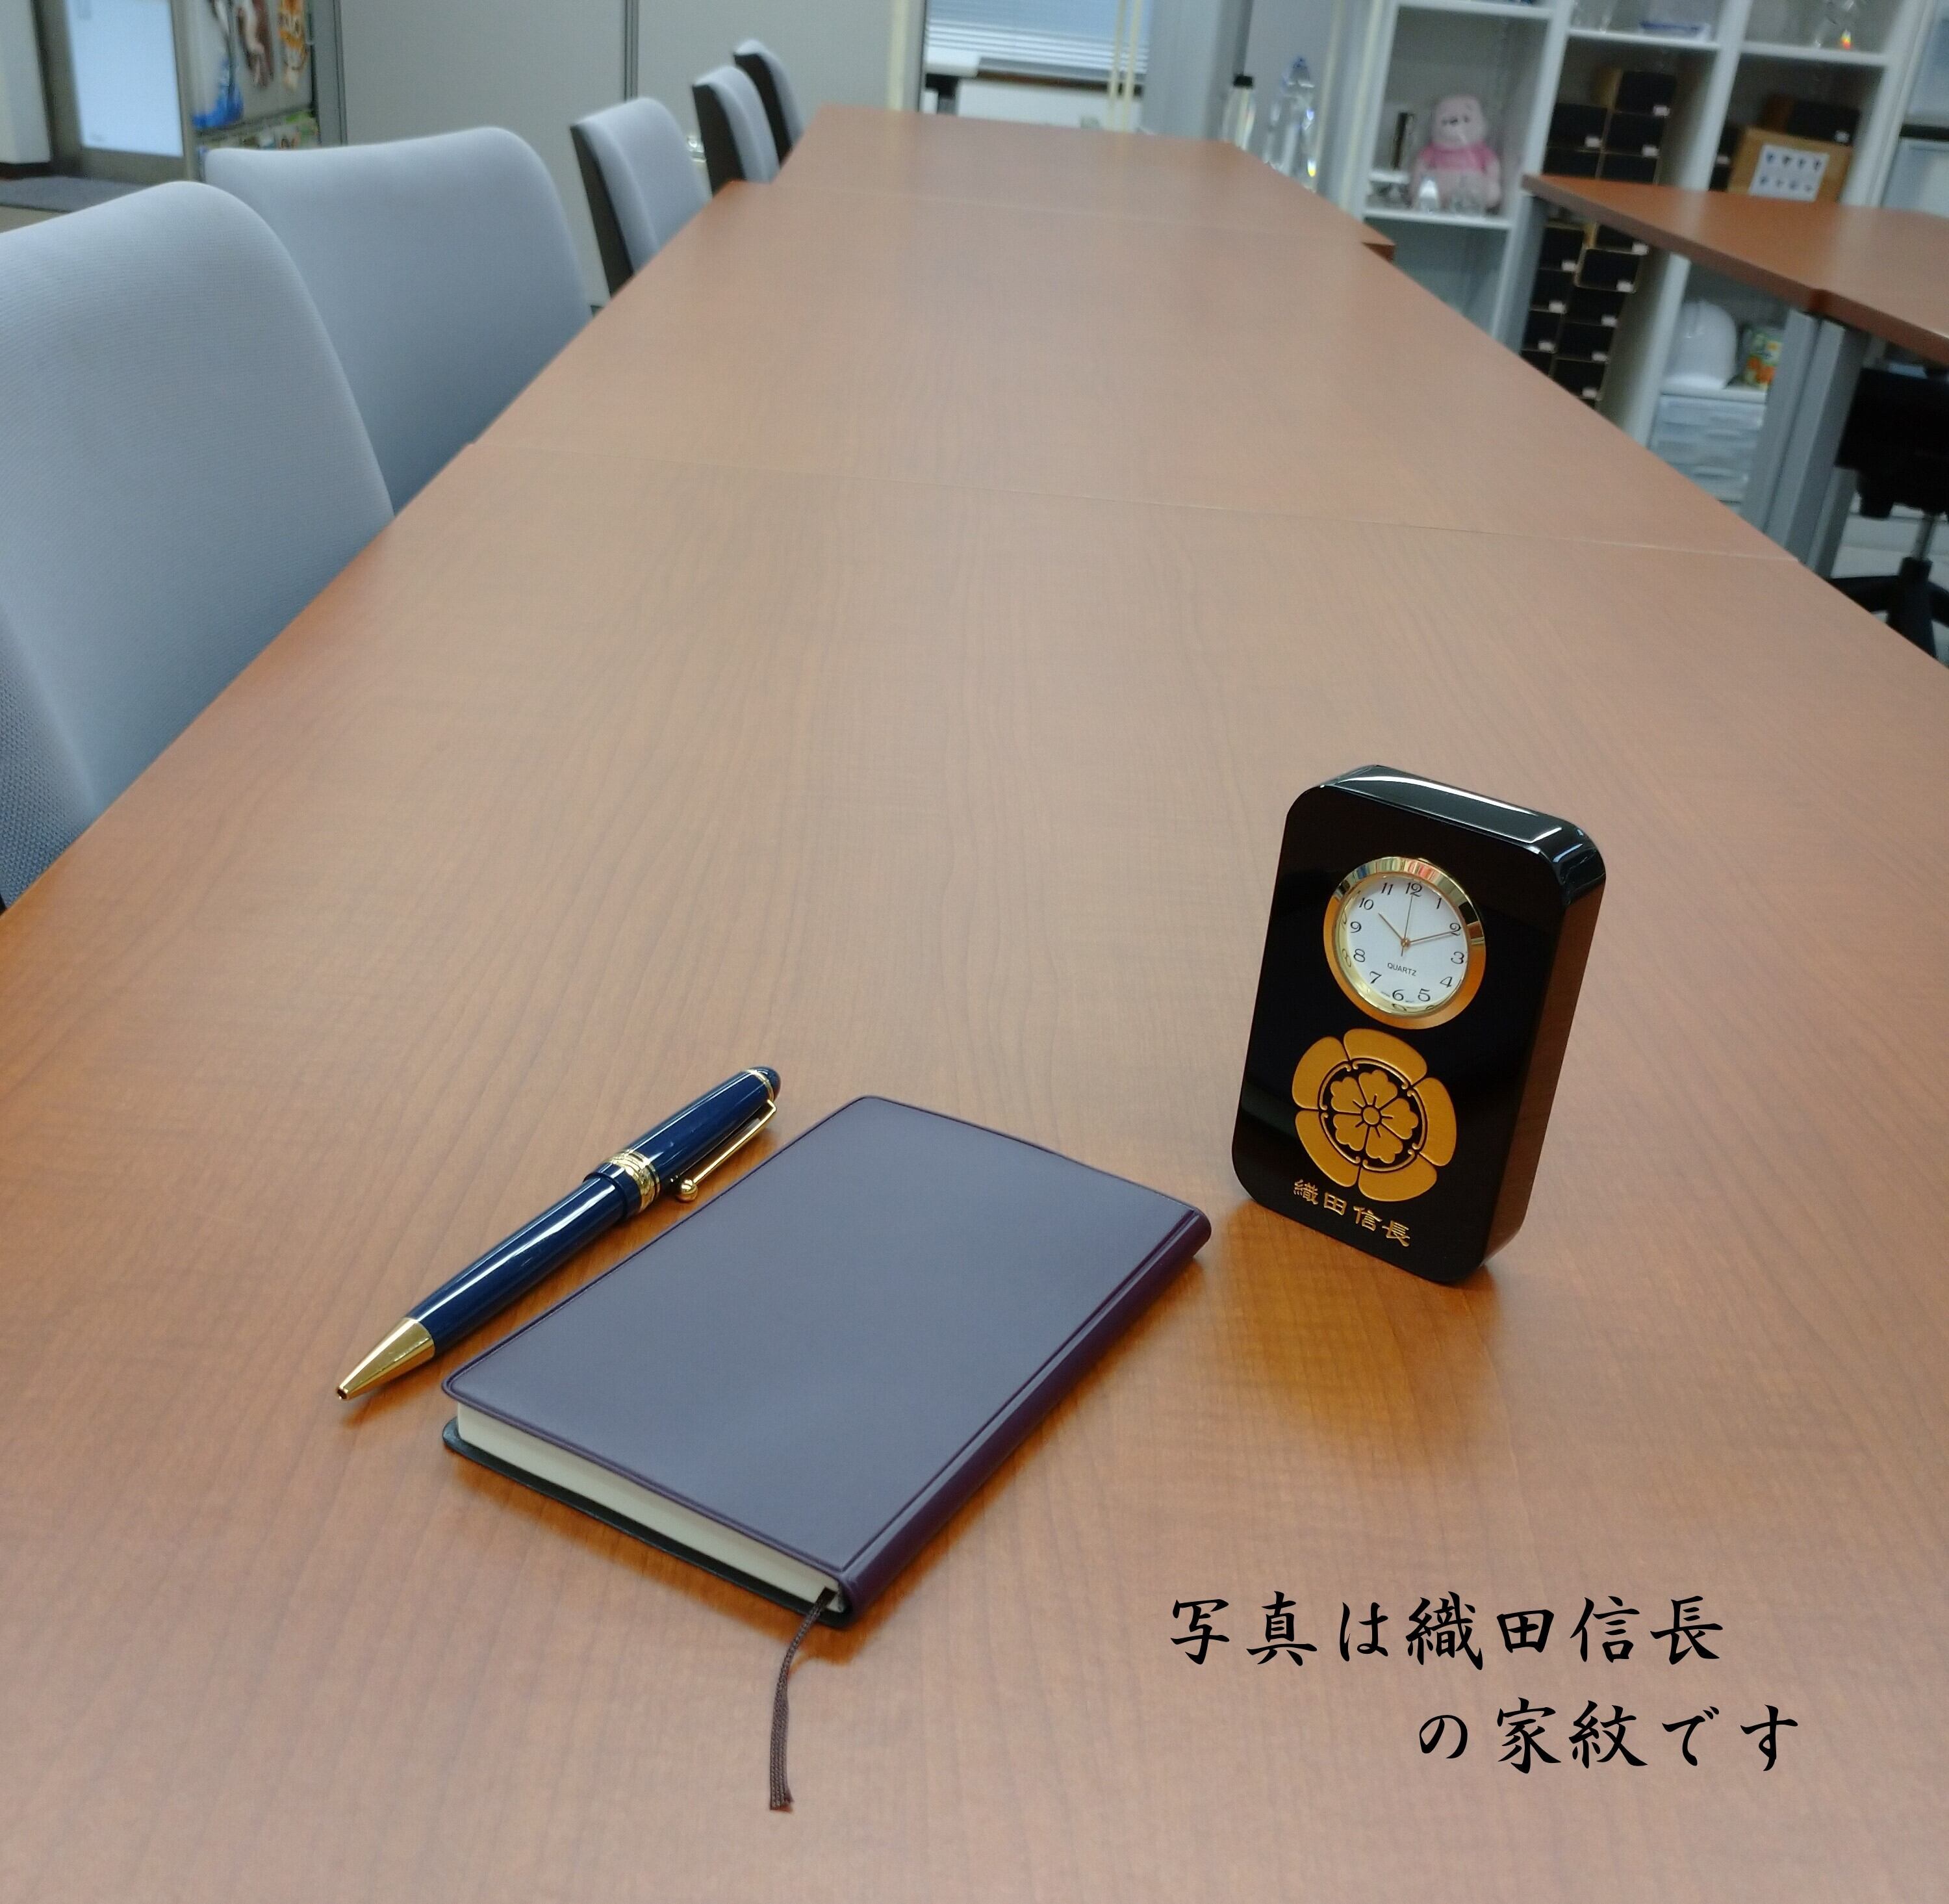 【限定販売】徳川家康 家紋　匠の黒硝子時計